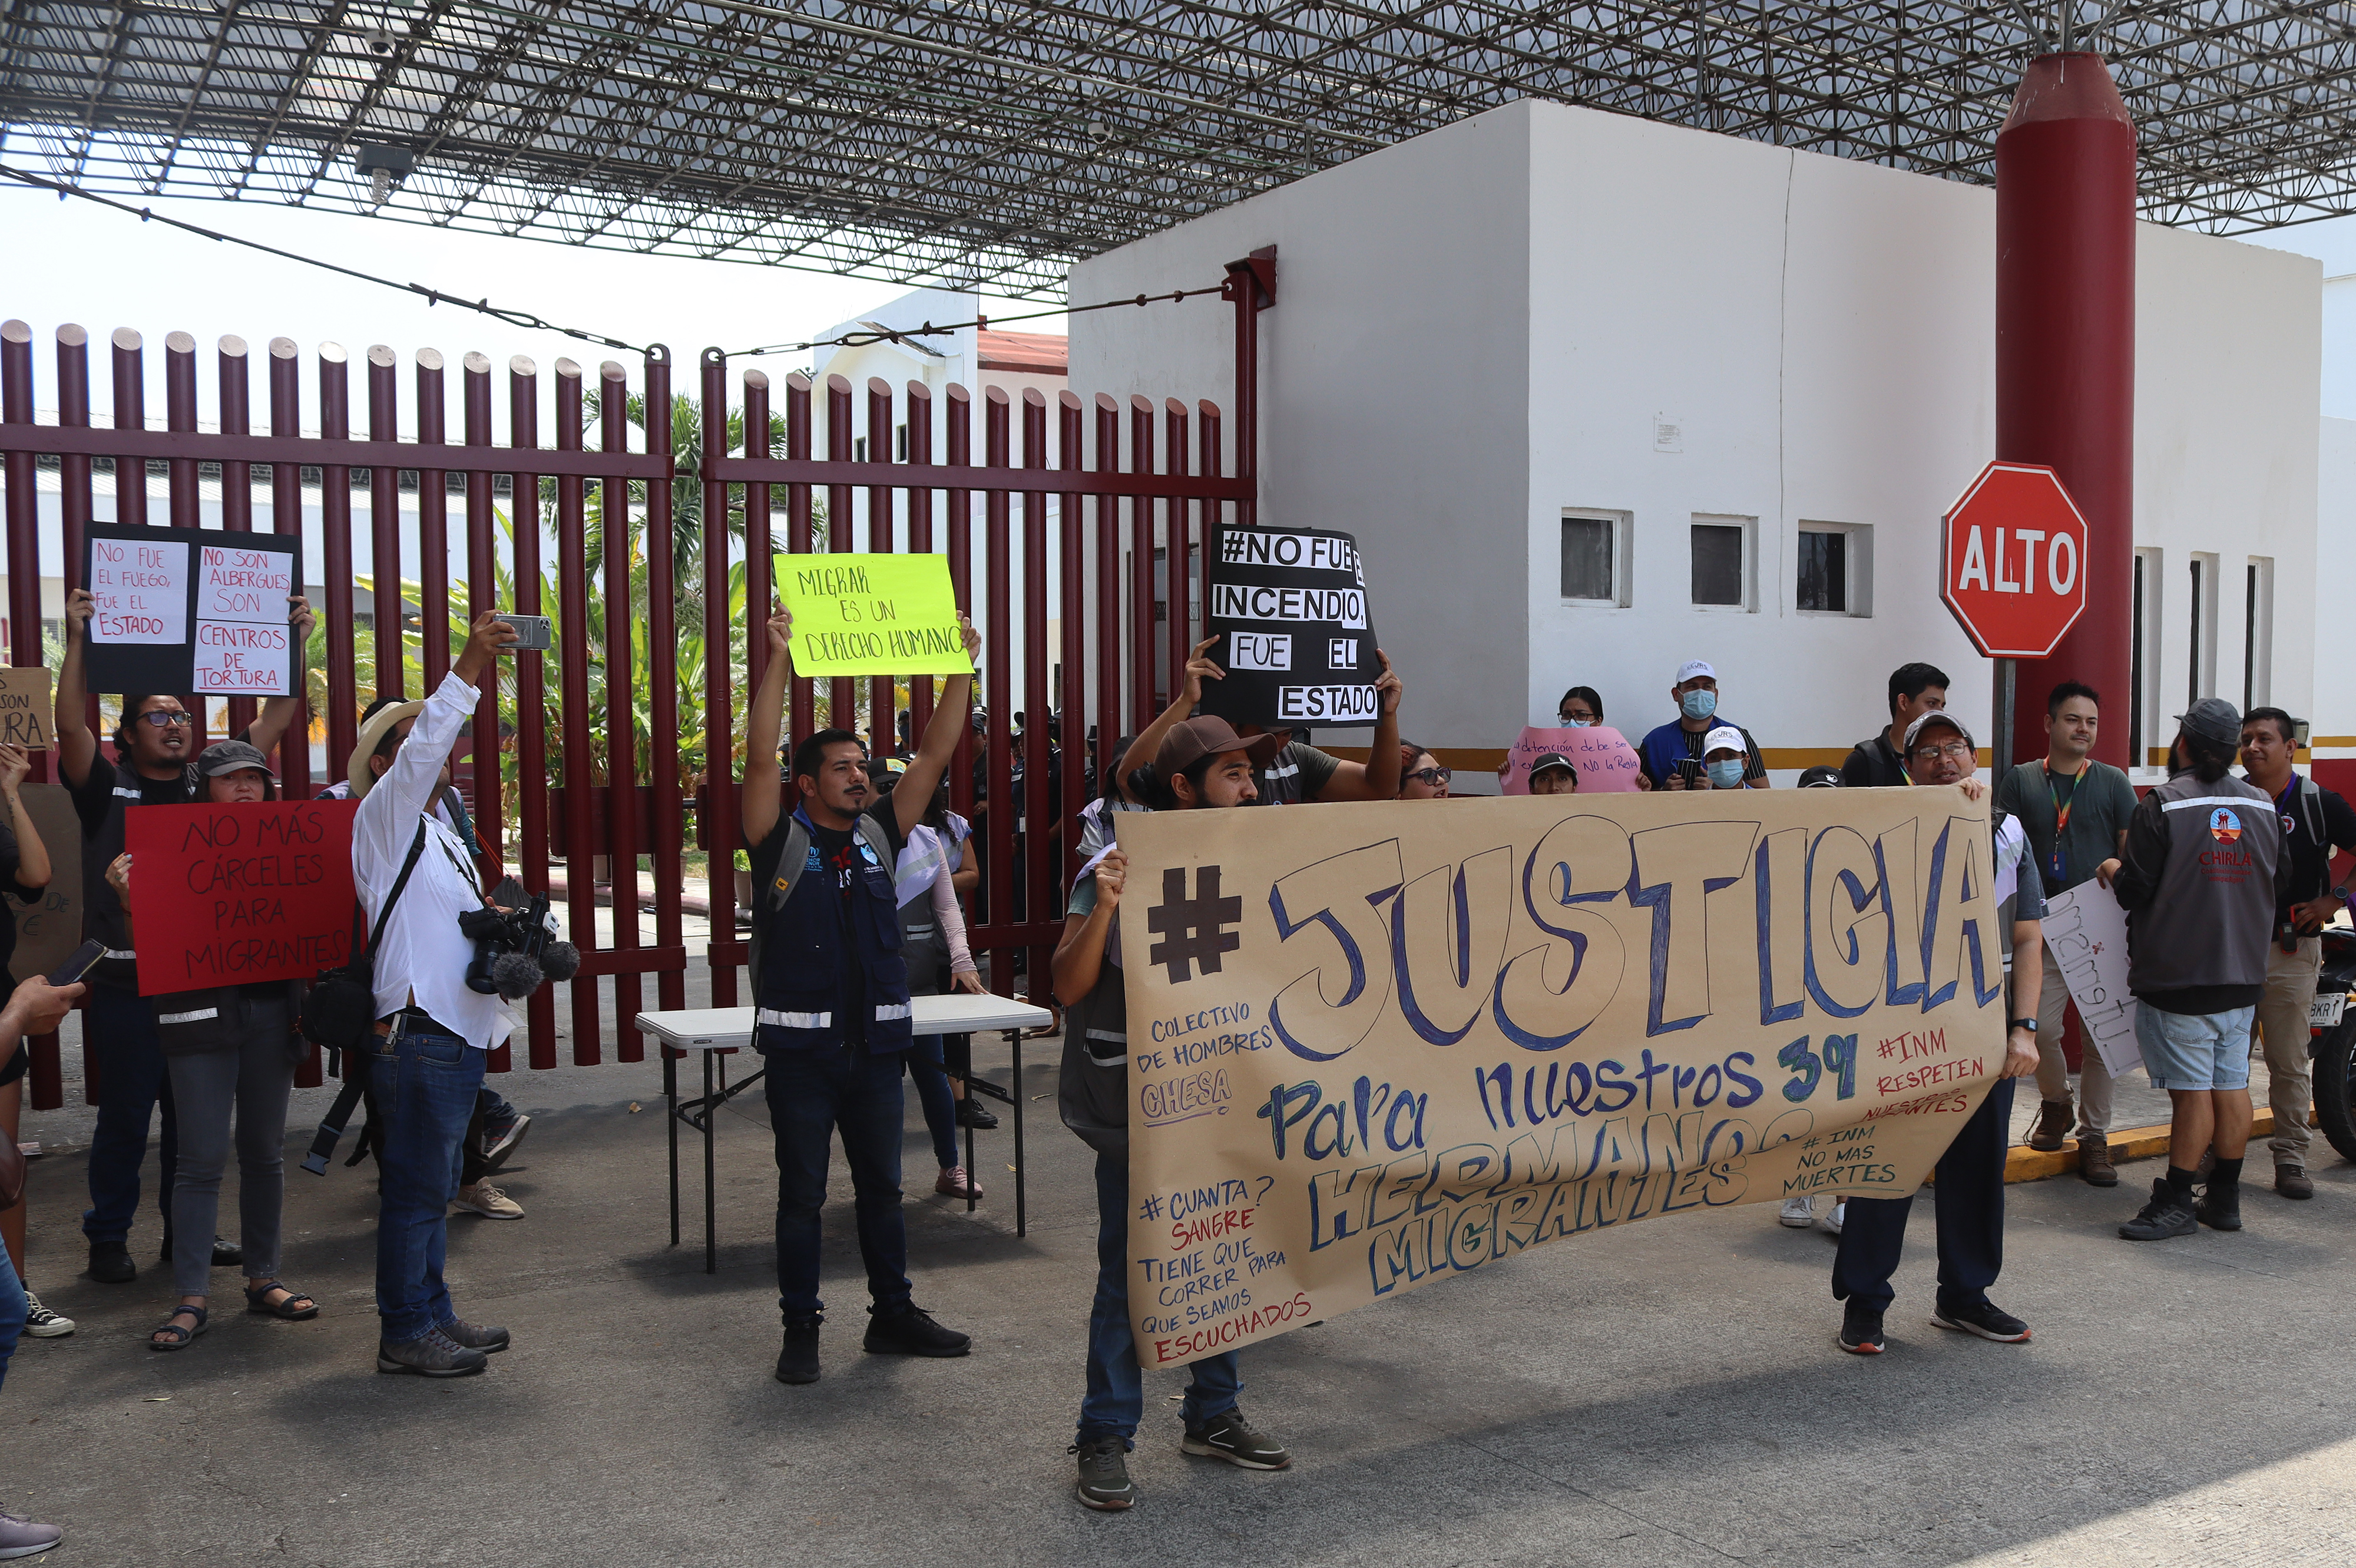 Migrantes protestan en frontera sur de México tras incendio que dejó 39 muertos en Ciudad Juárez'